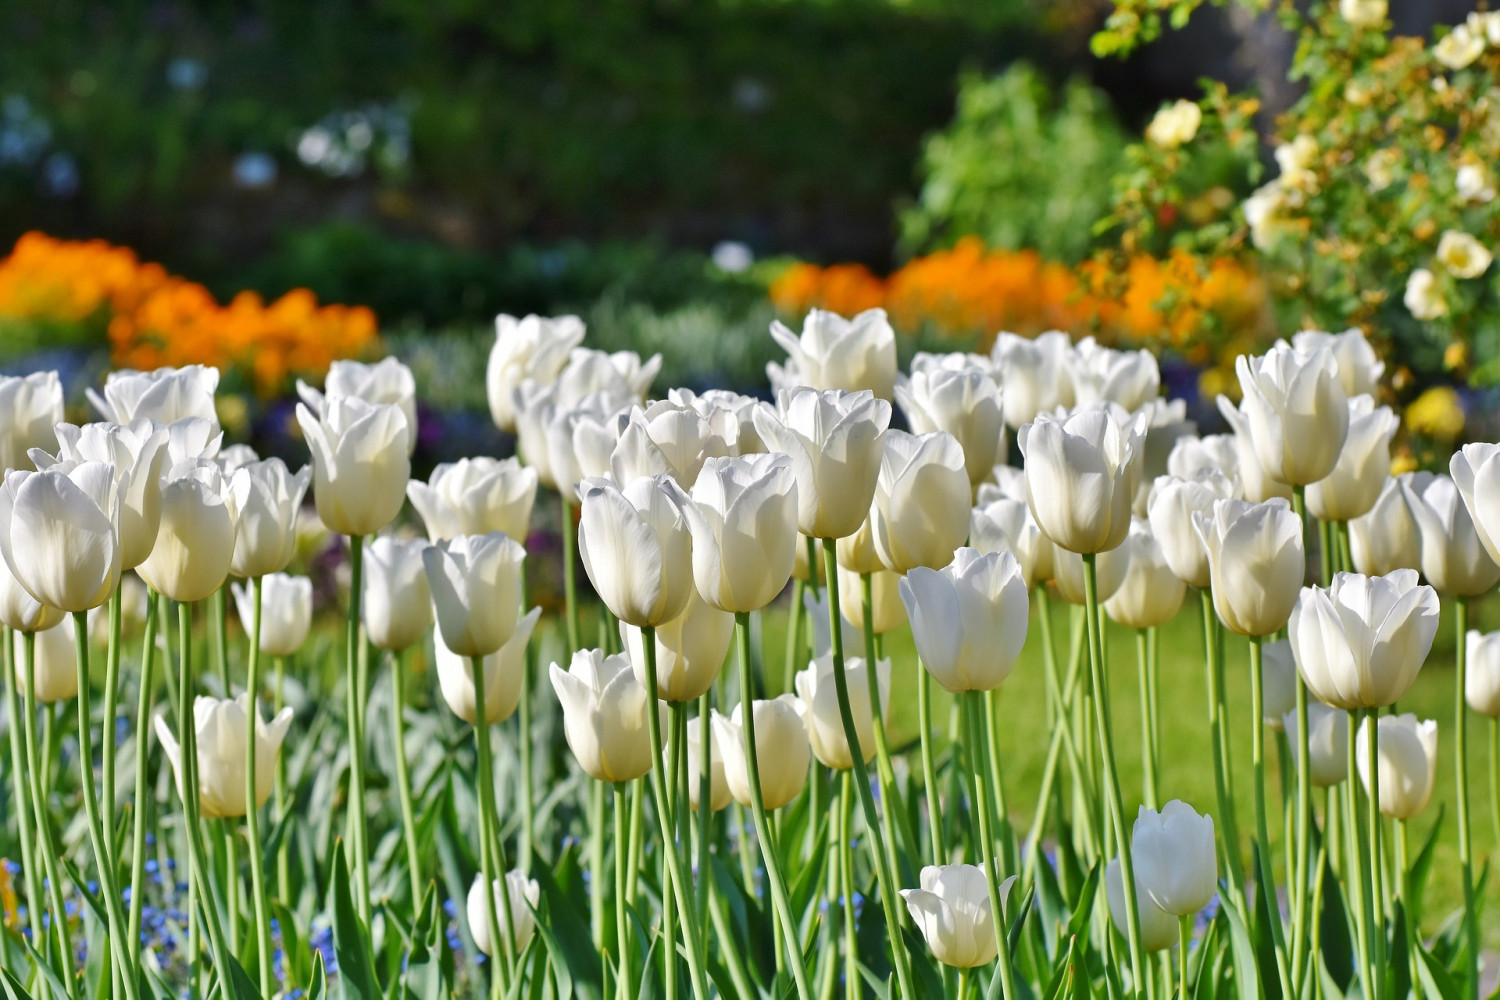 Wiosenne kwiaty ogrodowe są źródłem pokarmu dla owadów wygłodniałych po zimie.